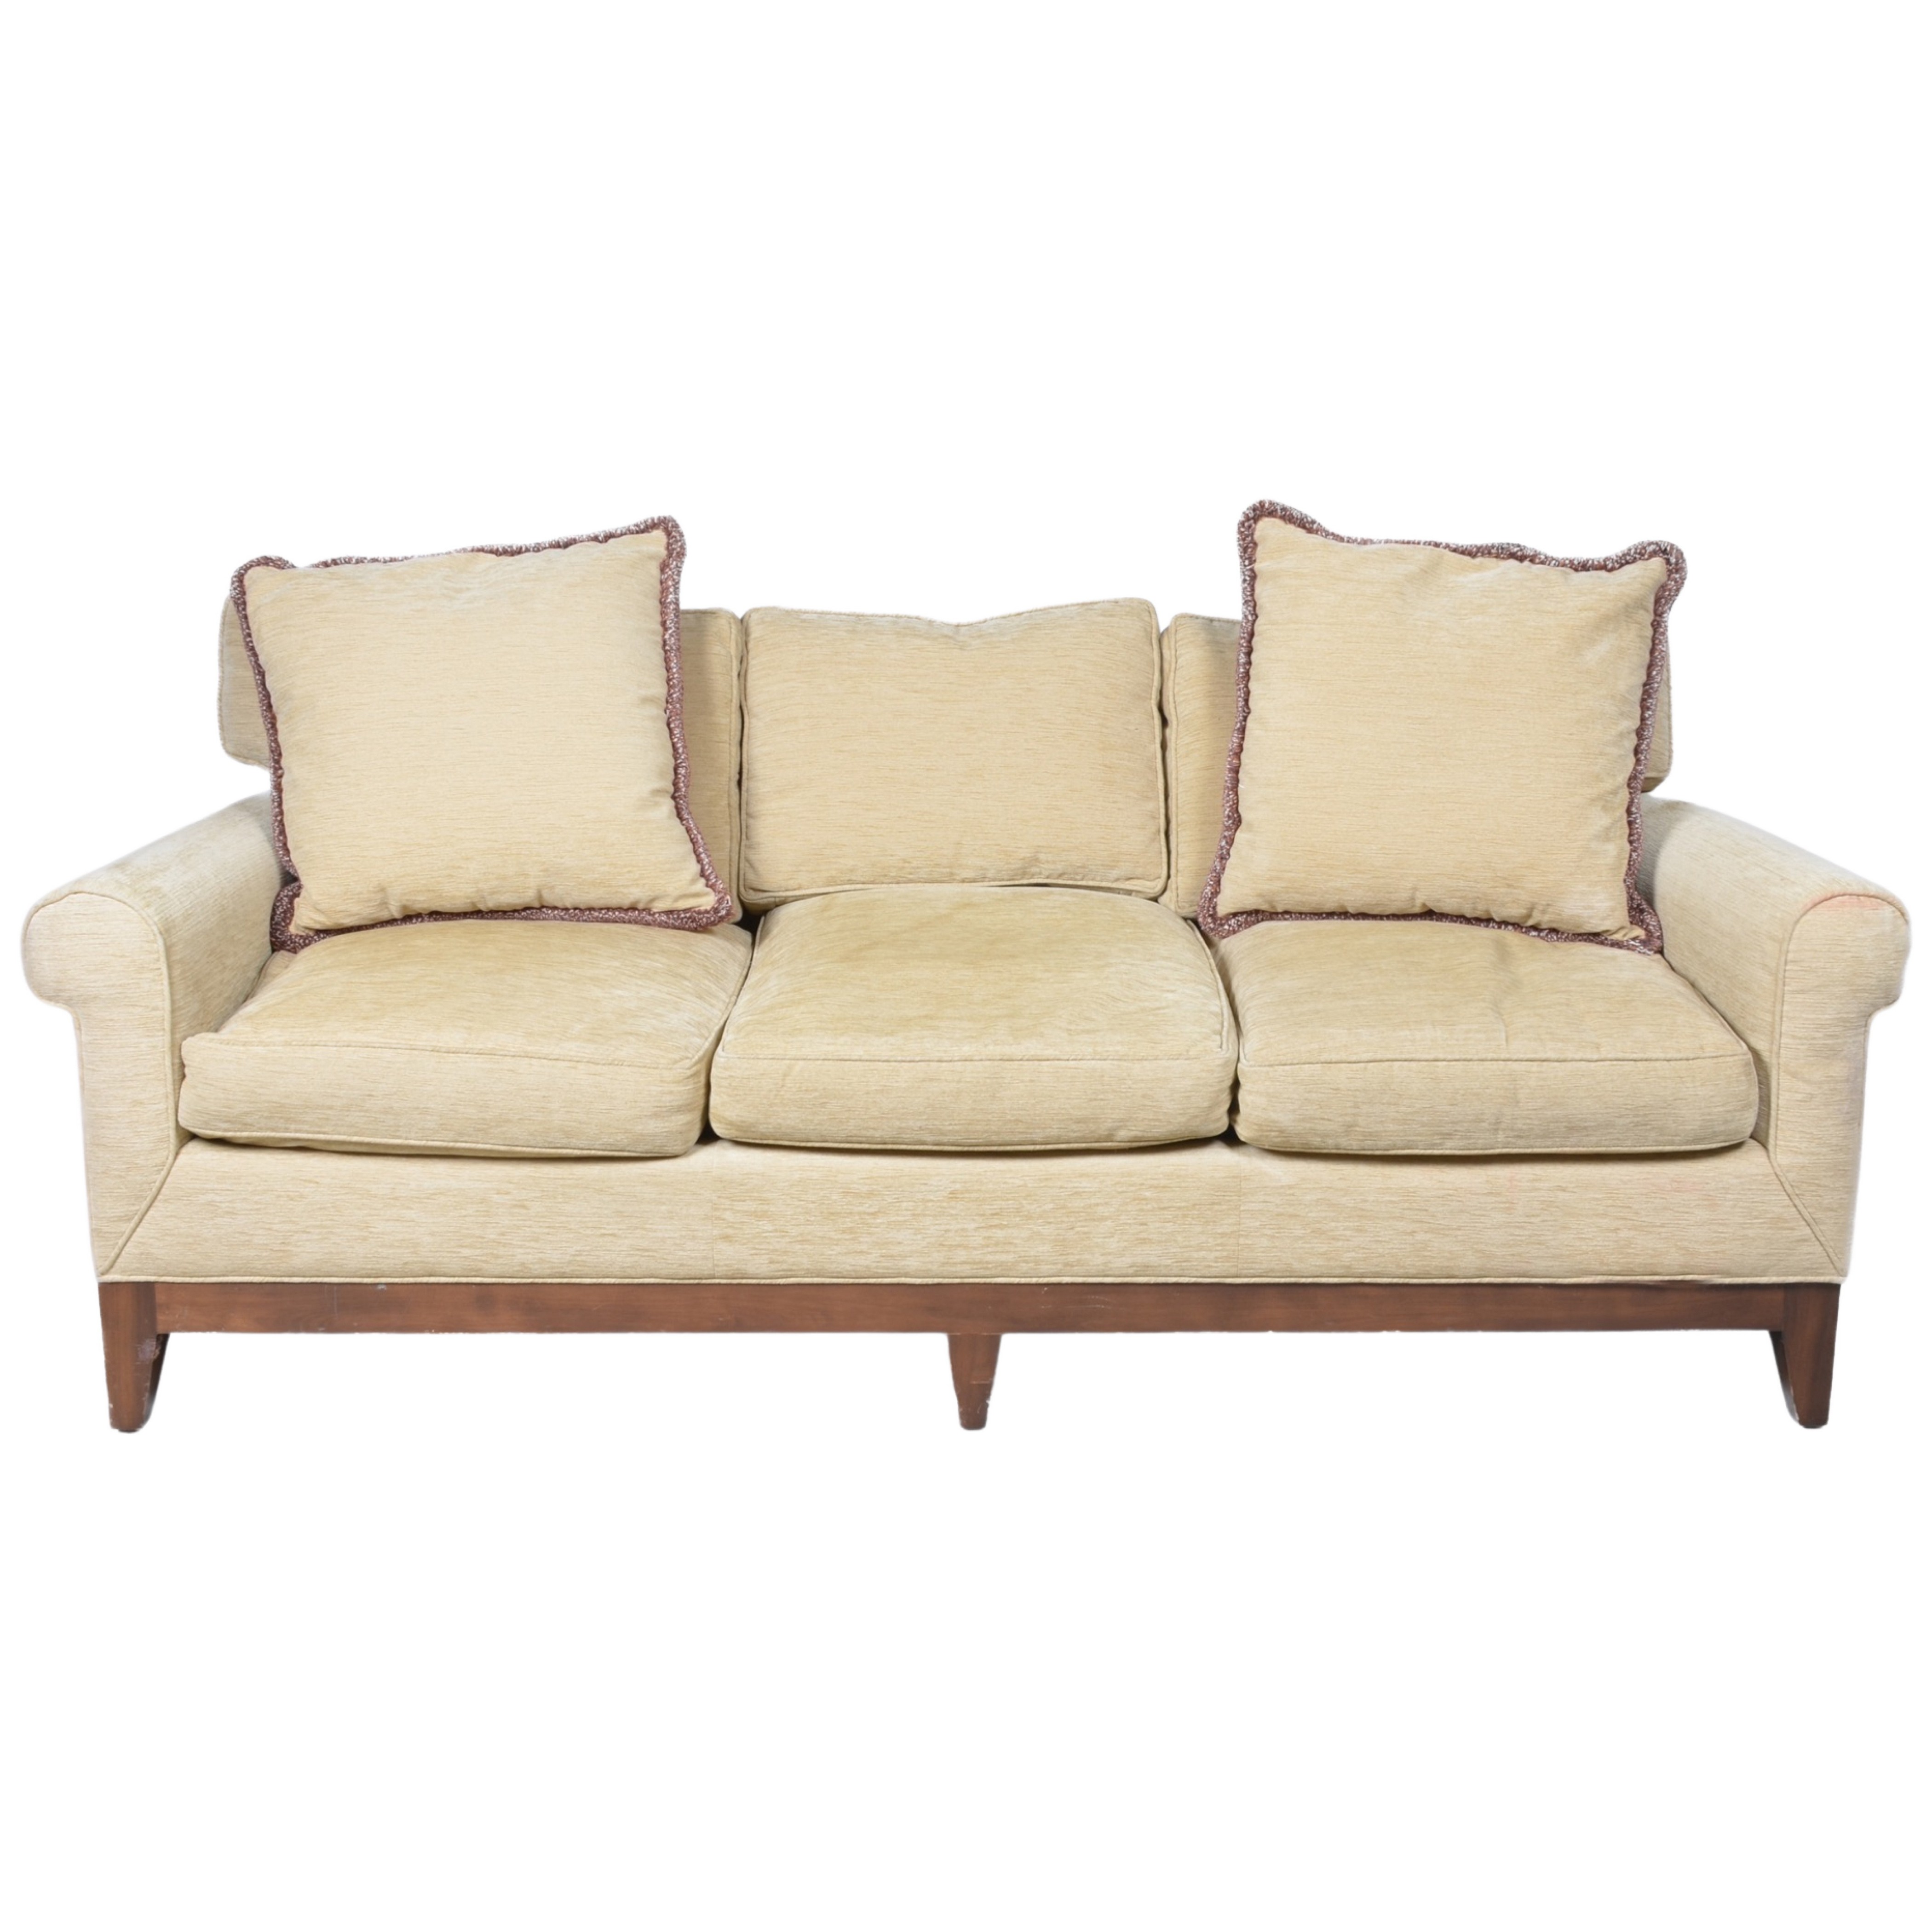 Modern Design 3 Seat Sofa Mason Art  3b447d